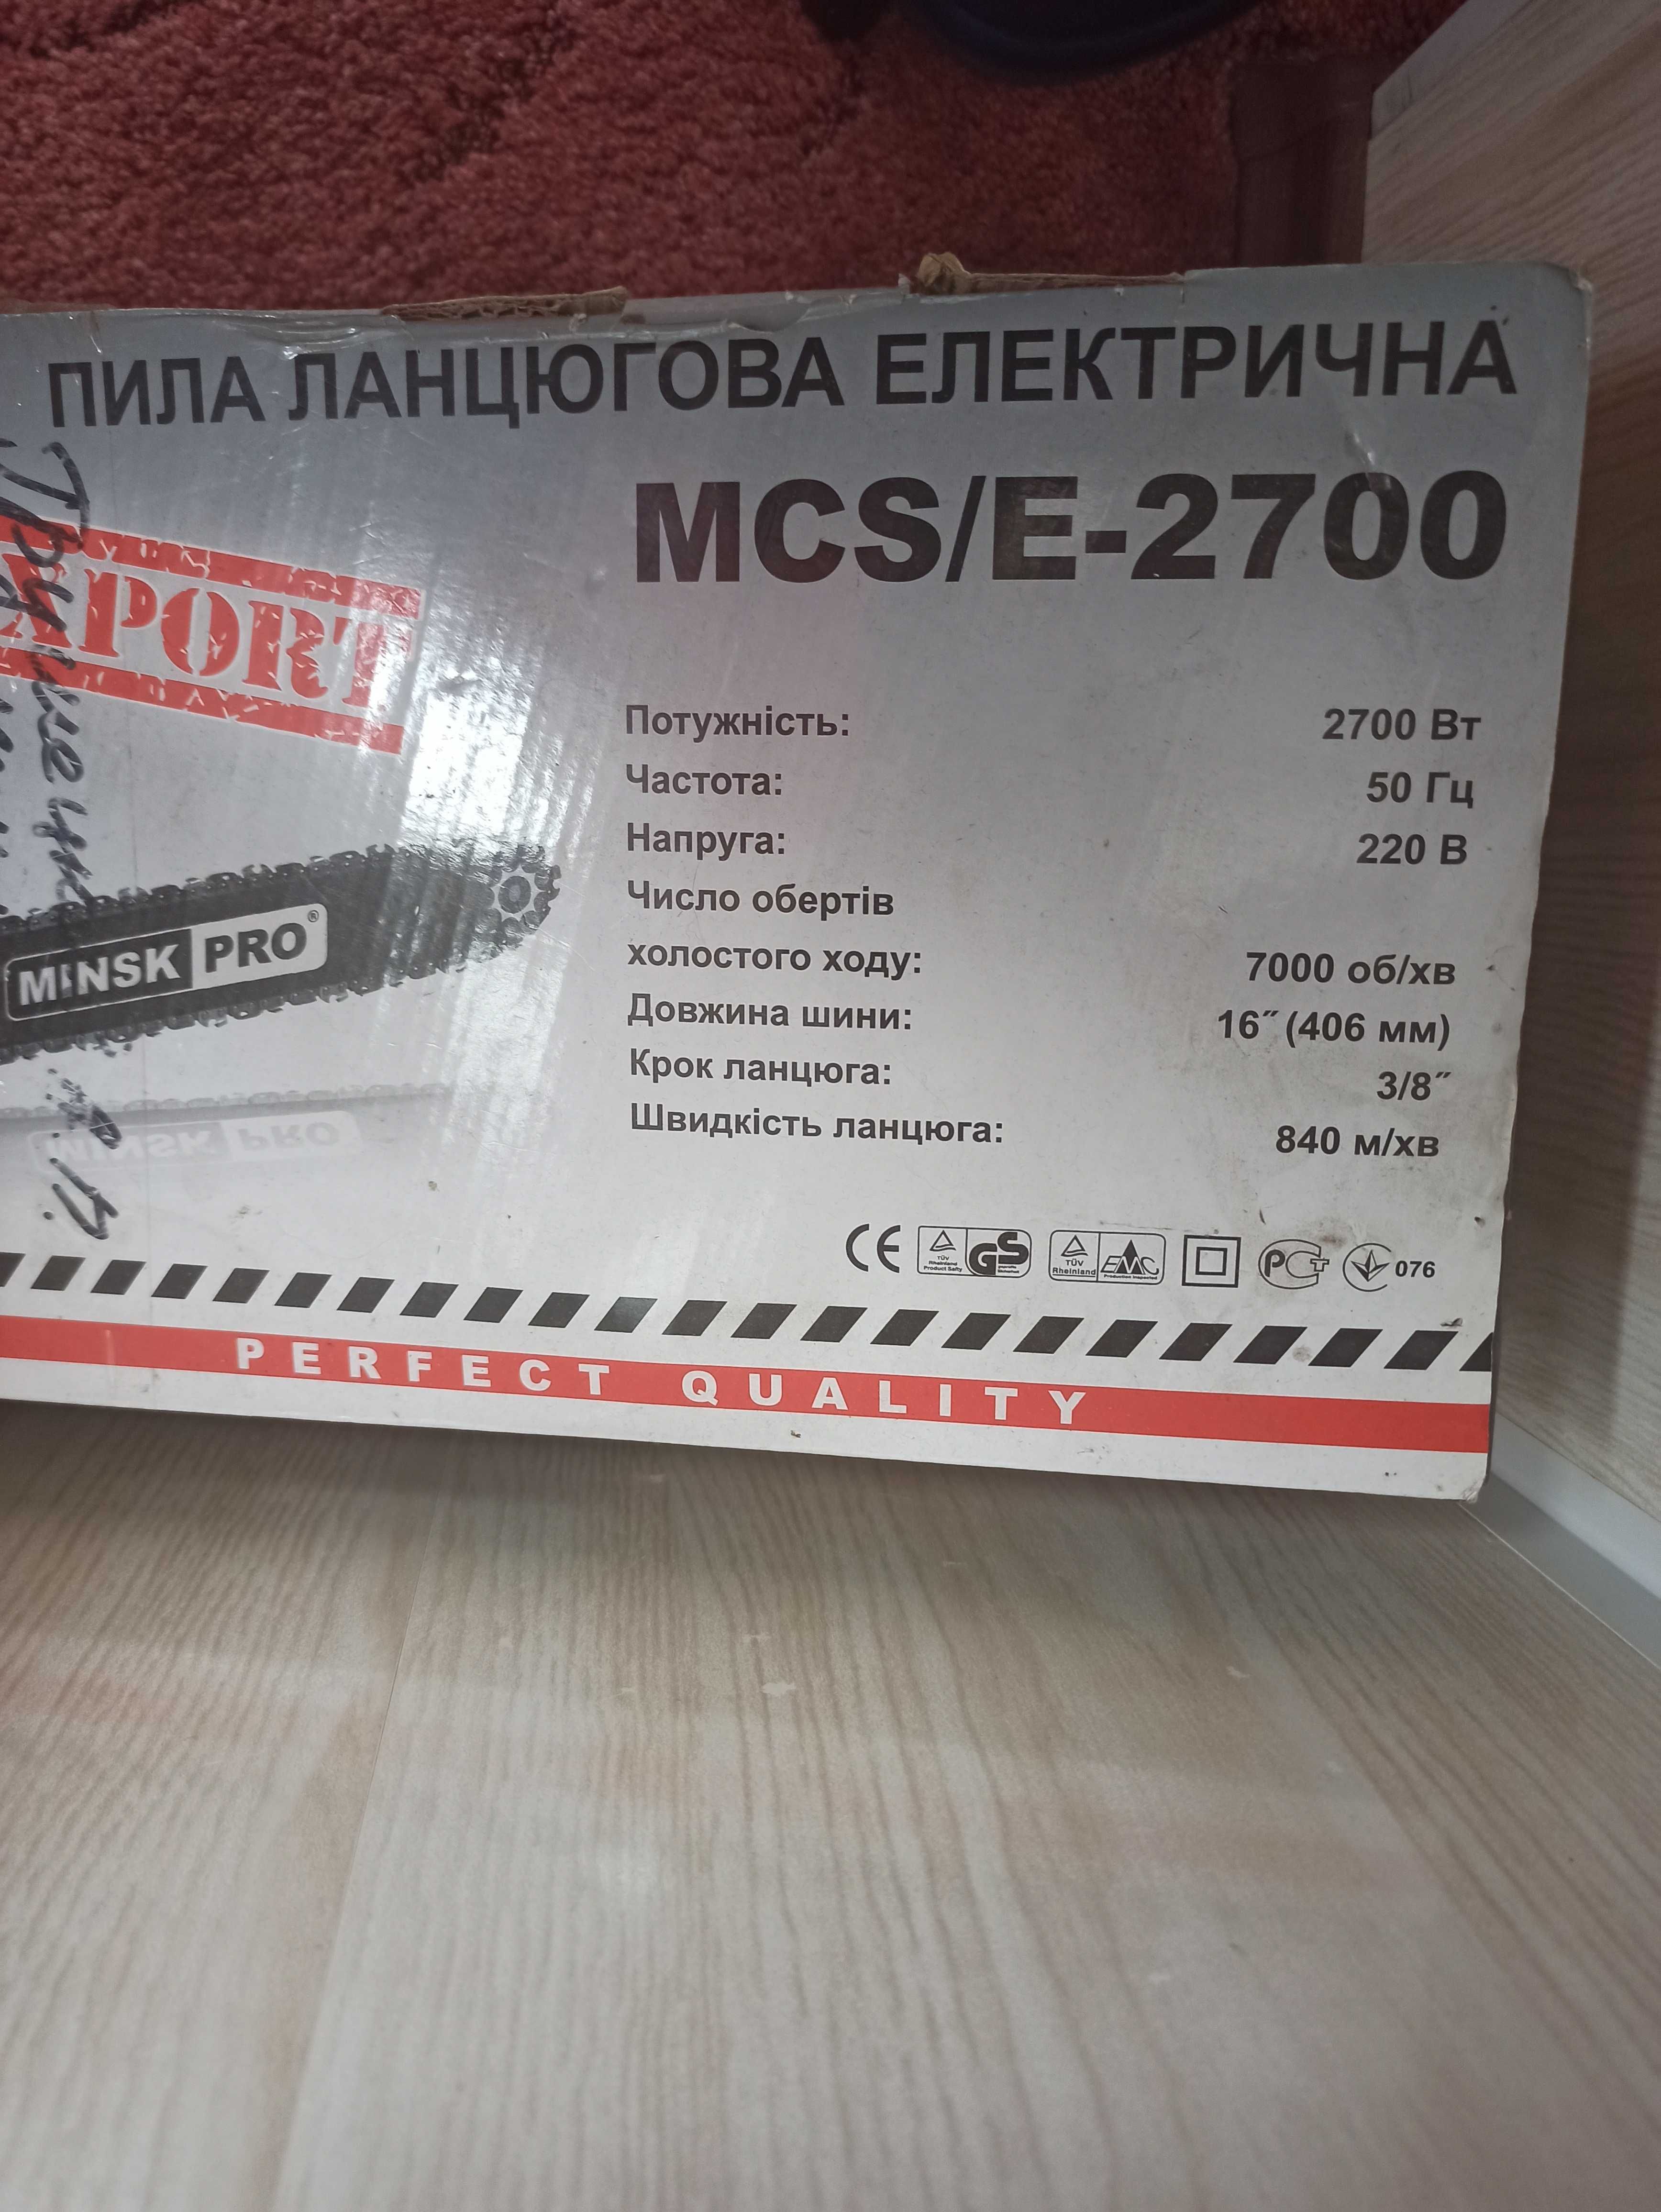 Електрична пила Минск MCS/E-2700